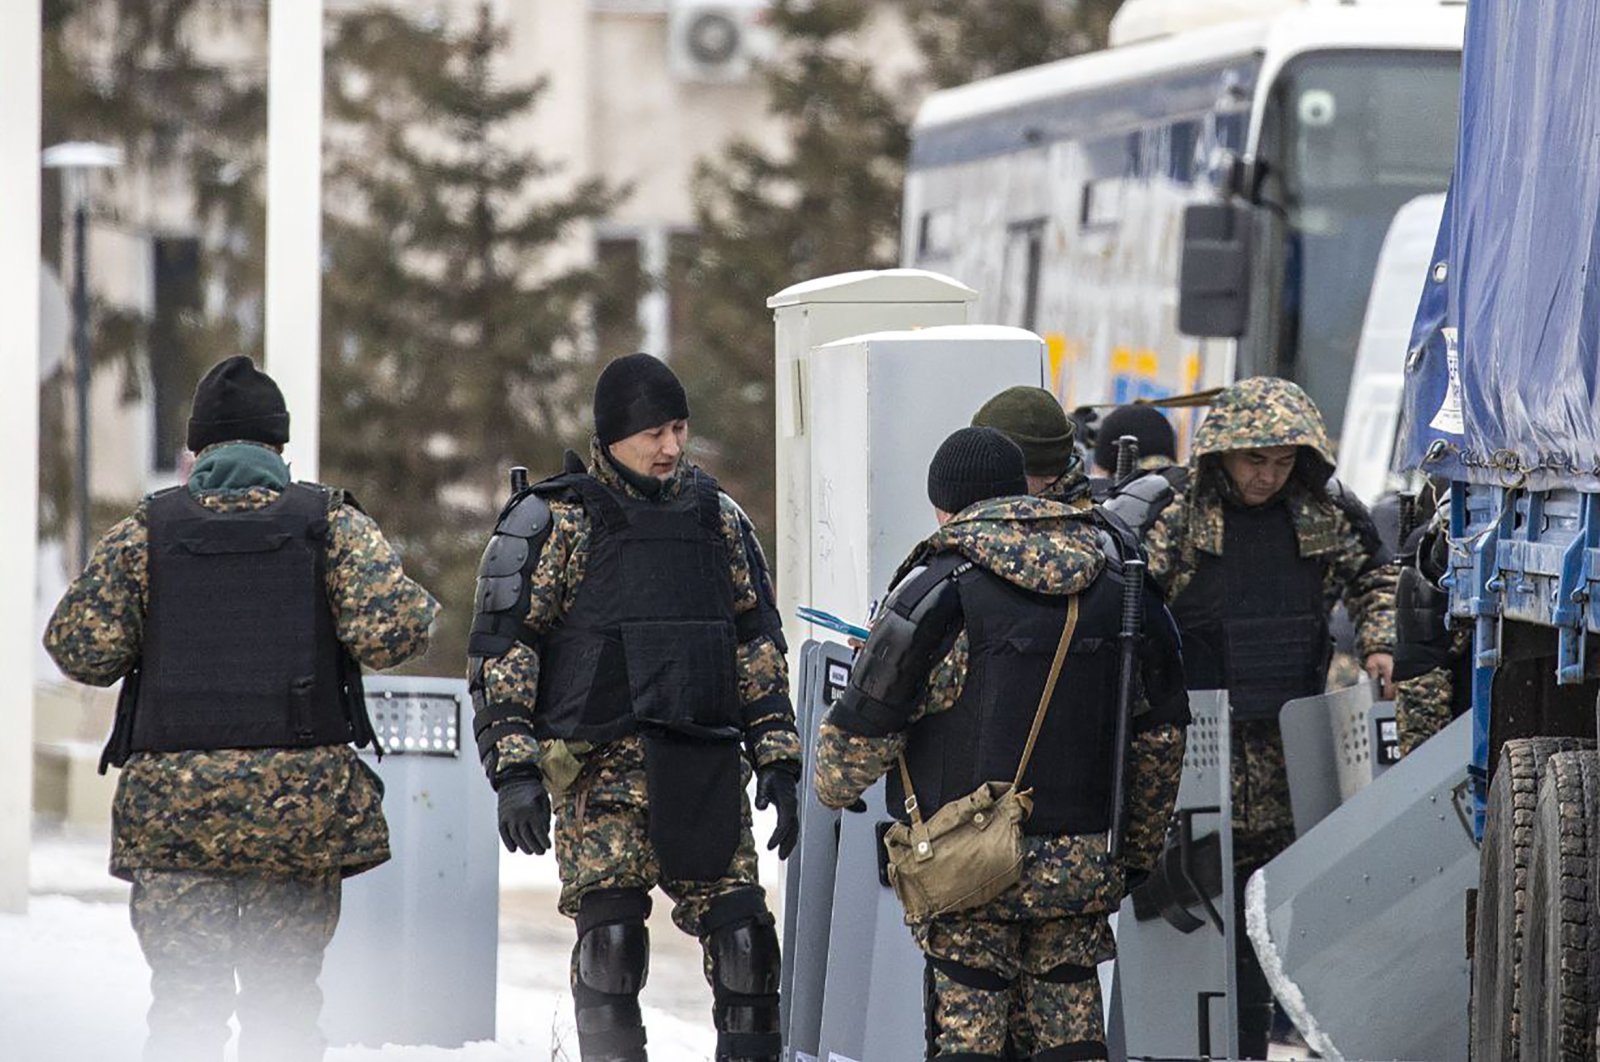 Kazakh army personnel guard an area in downtown Nur-Sultan, Kazakhstan, Jan. 8, 2022. (EPA Photo)